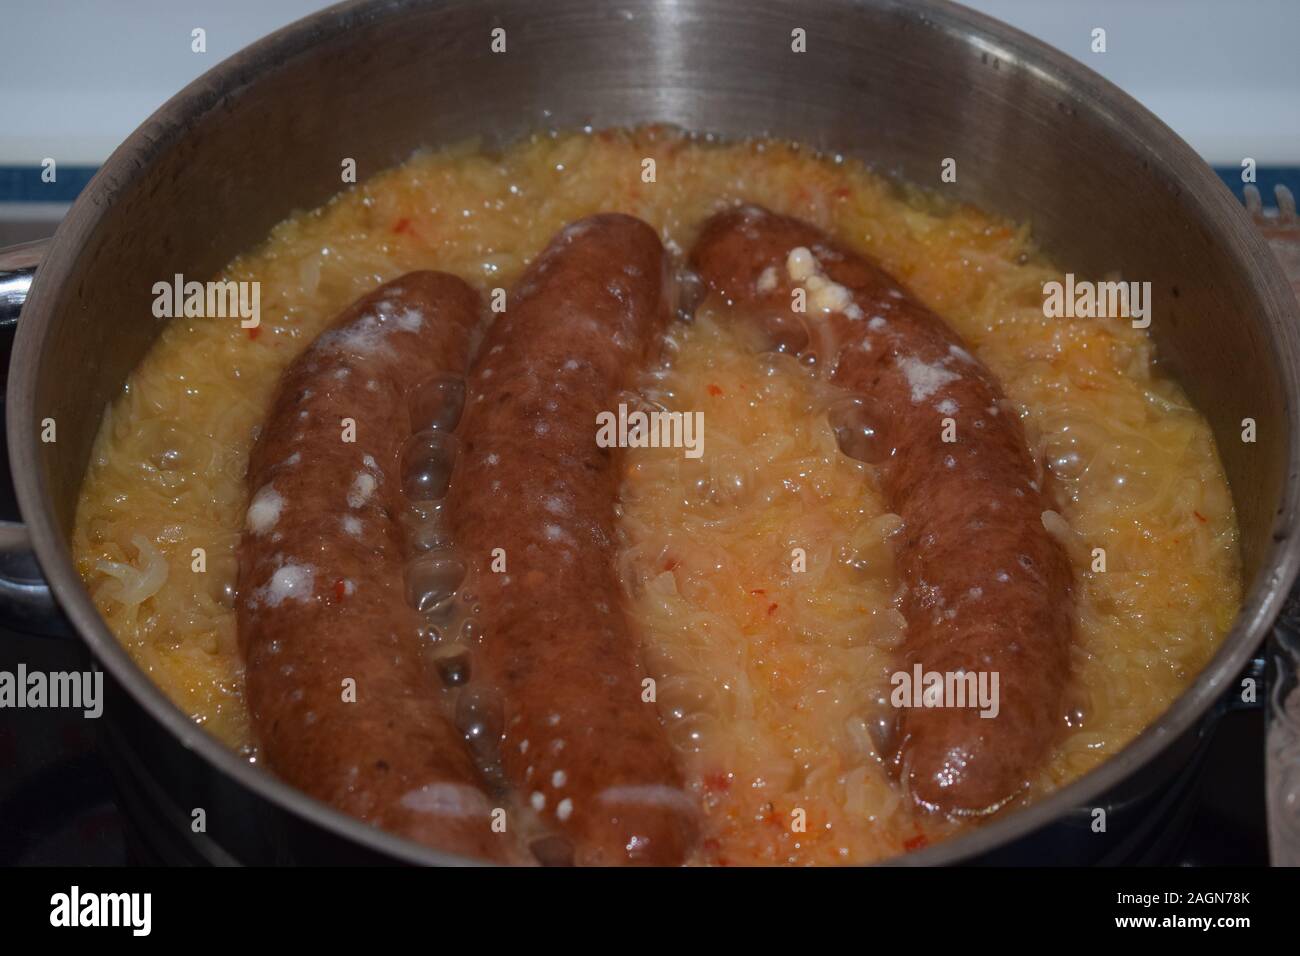 saussages in Sauerkraut Stock Photo